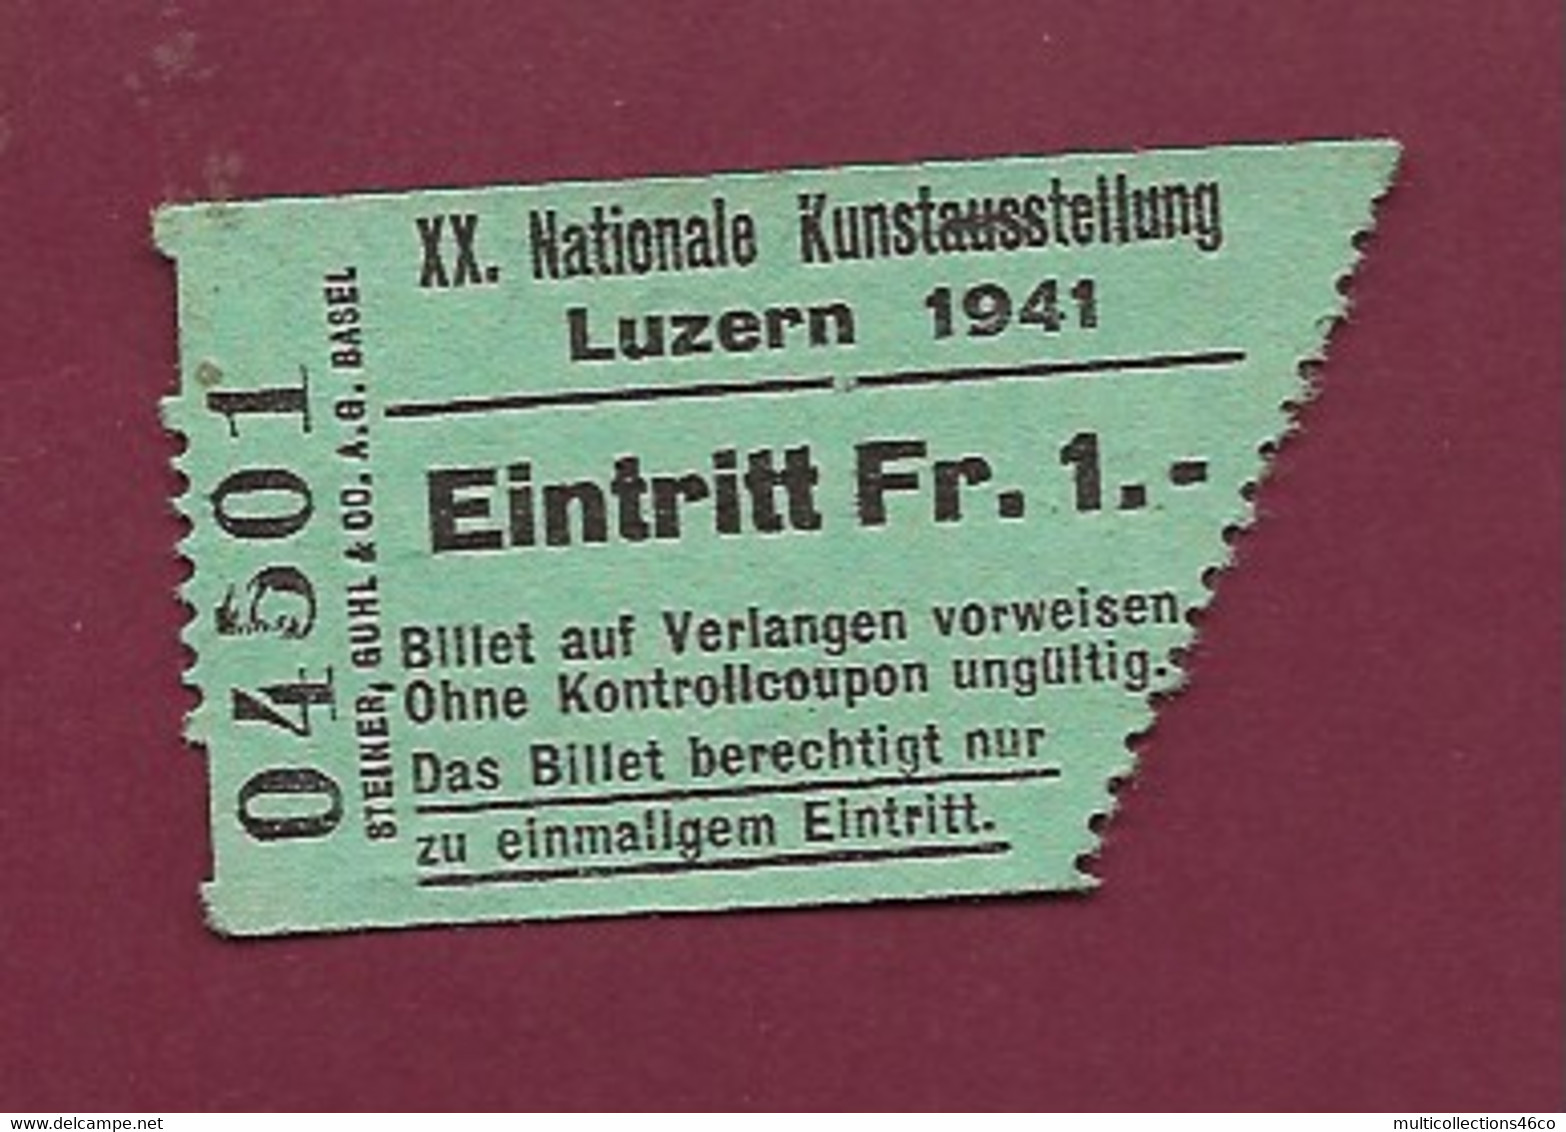 051120 - TICKET TRANSPORT SUISSE - LUZERN 1941 XX Nationale Kunstausstellung Eintritt FR 1 04501 - Wereld